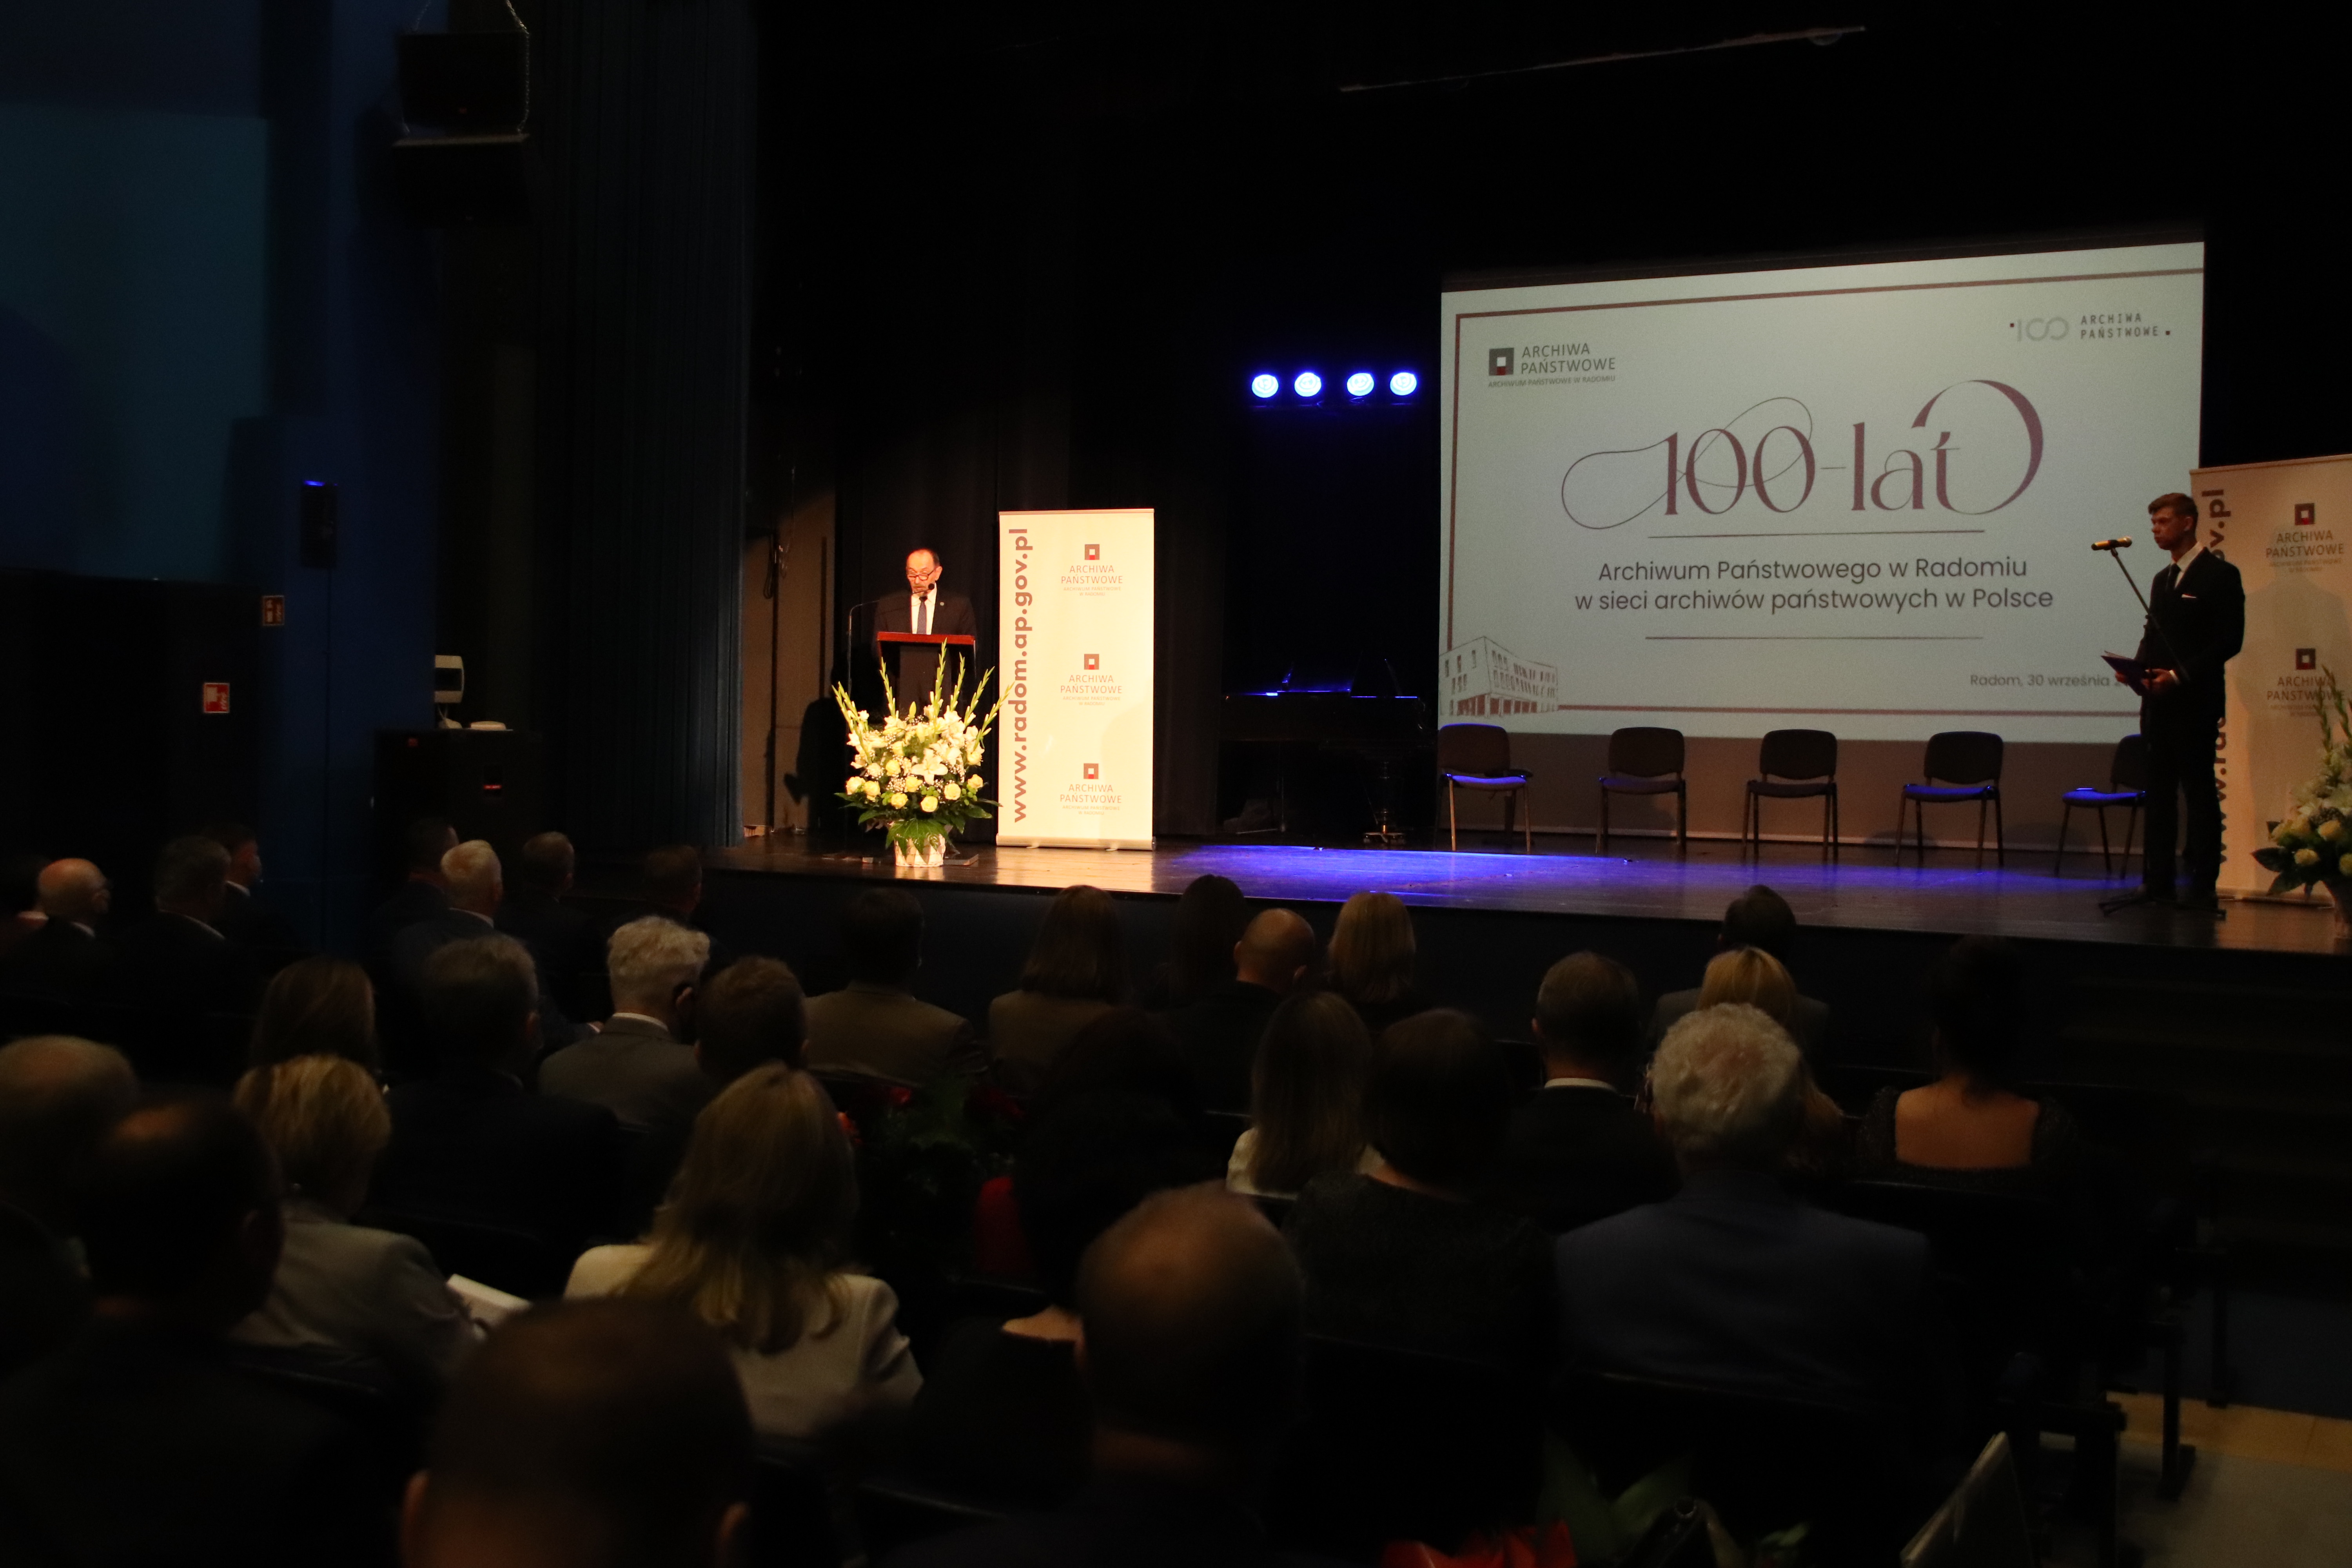  Dyrektor Jaroszek przemawia na scenie, oświetlony reflektorem, za nim slajd prezentacji z napisem 100 lat Archiwum Państwowego w Radomiu w sieci archiwów państwowych w Polsce.